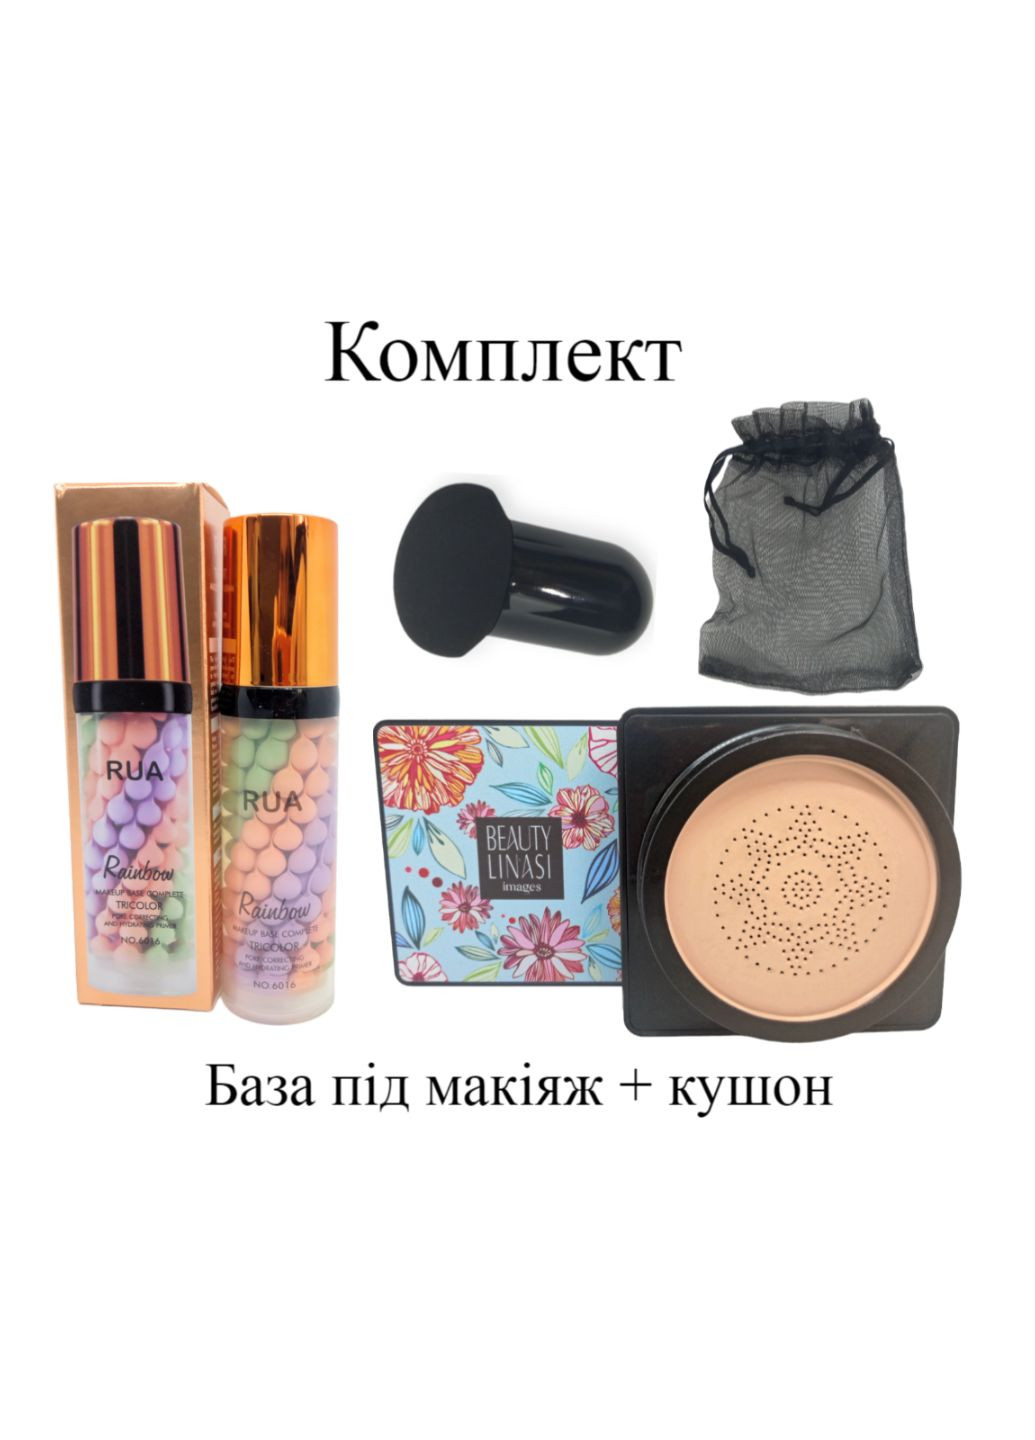 Комплект тональный крем кушон беж + база под макияж натуральный финиш увлажняющий Beauty Linasi + Jomtam No Brand (278259377)